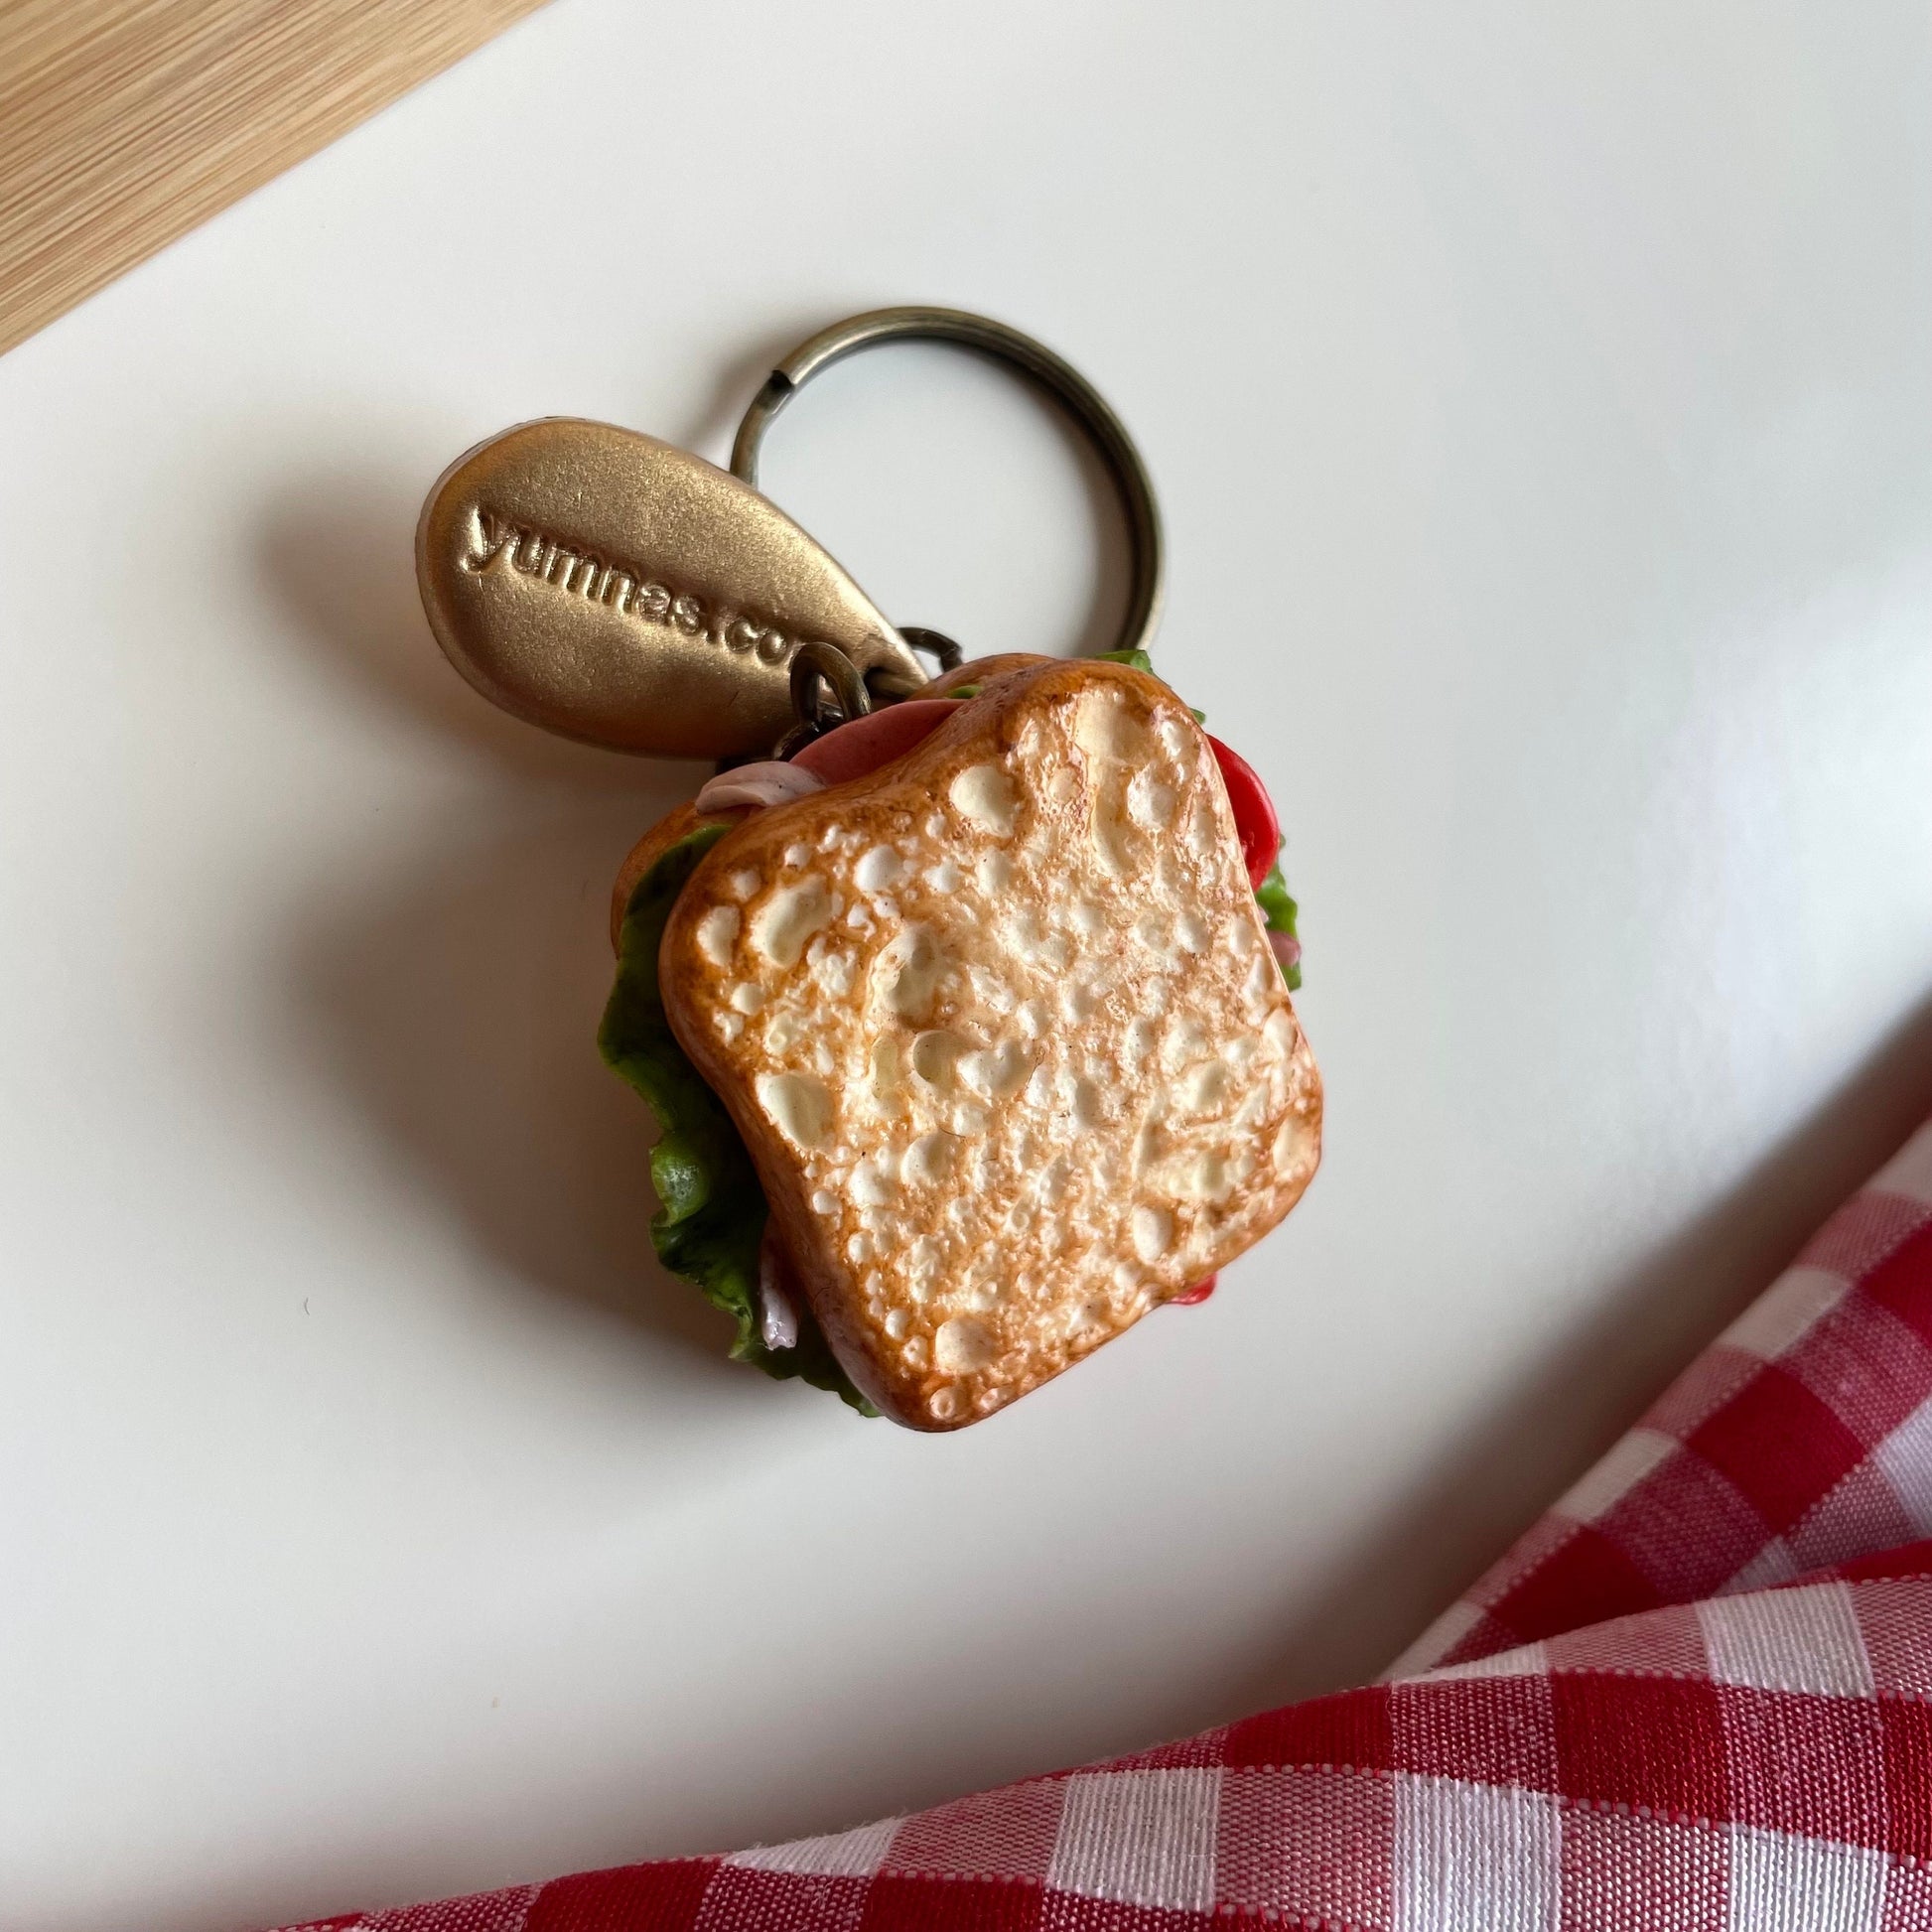 Salami sandwich keychain, bread keychain, chicken sandwich keyring, novelty keychain , polymerclay charm, clay keyring, realistic food charm